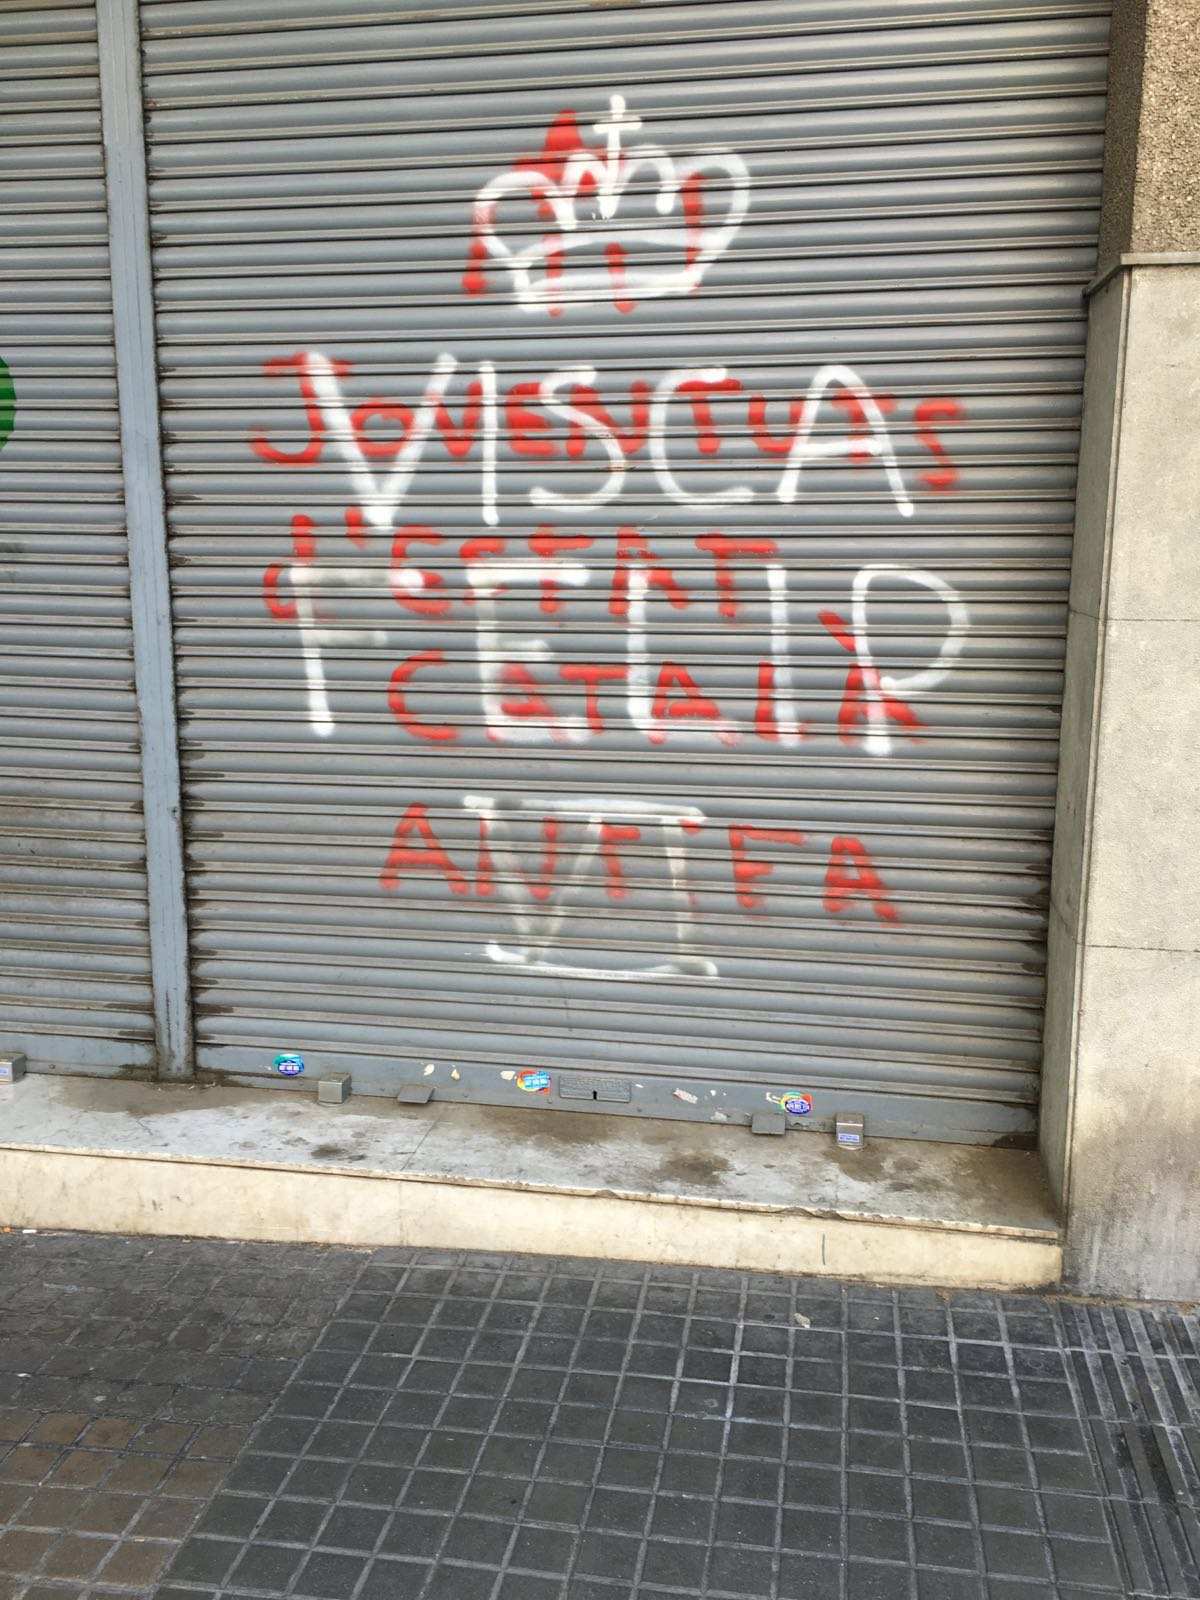 Pintada monárquica en Barcelona: 'Visca Felip VI'